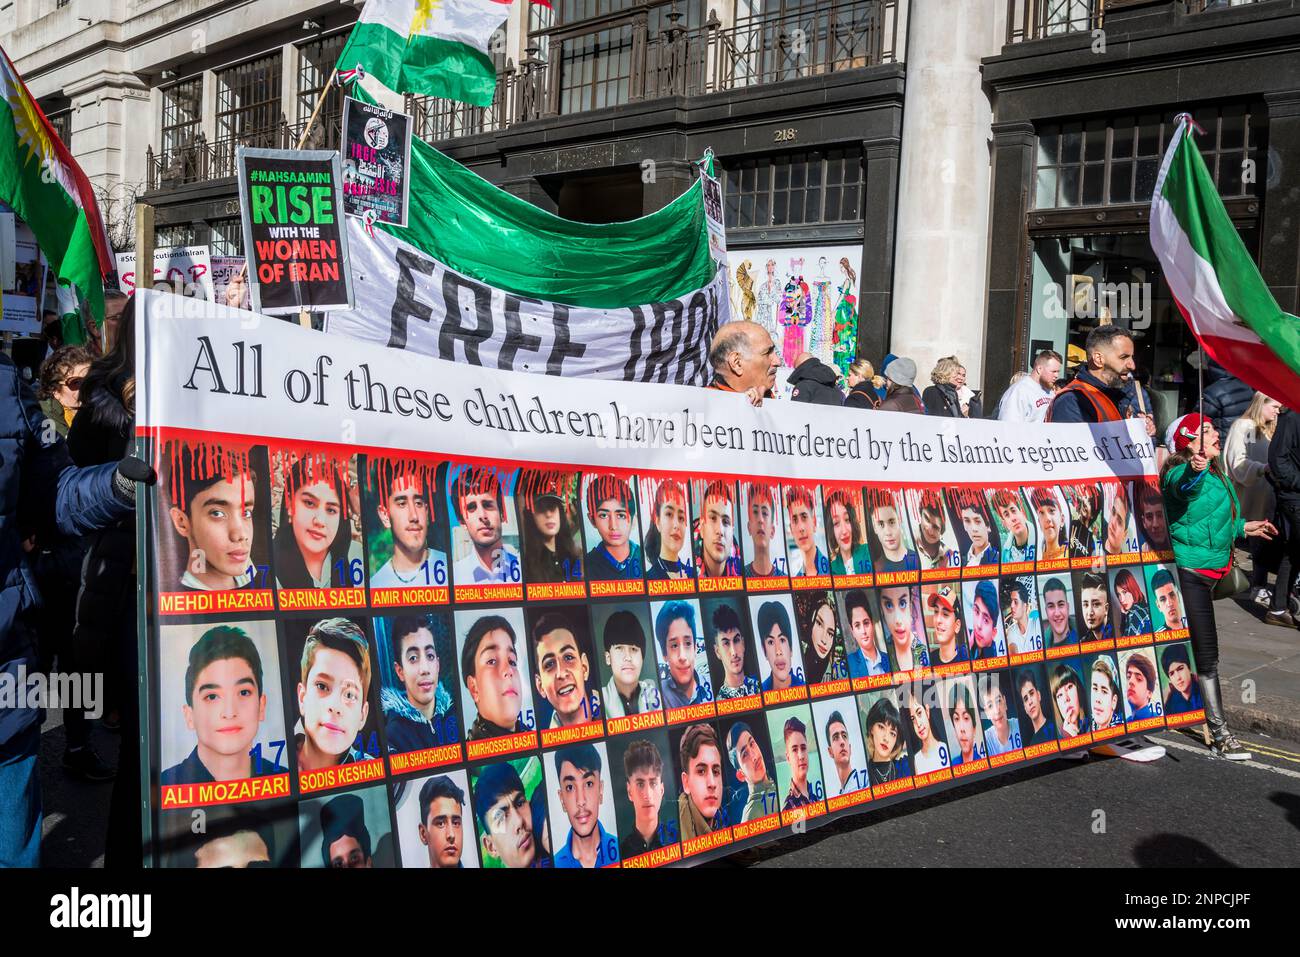 Banner mit Fotografien junger Menschen, die vom islamischen Regime getötet wurden, prodemokratischer iranischer Protest gegen die autokratische islamistische Regierung des Iran Stockfoto